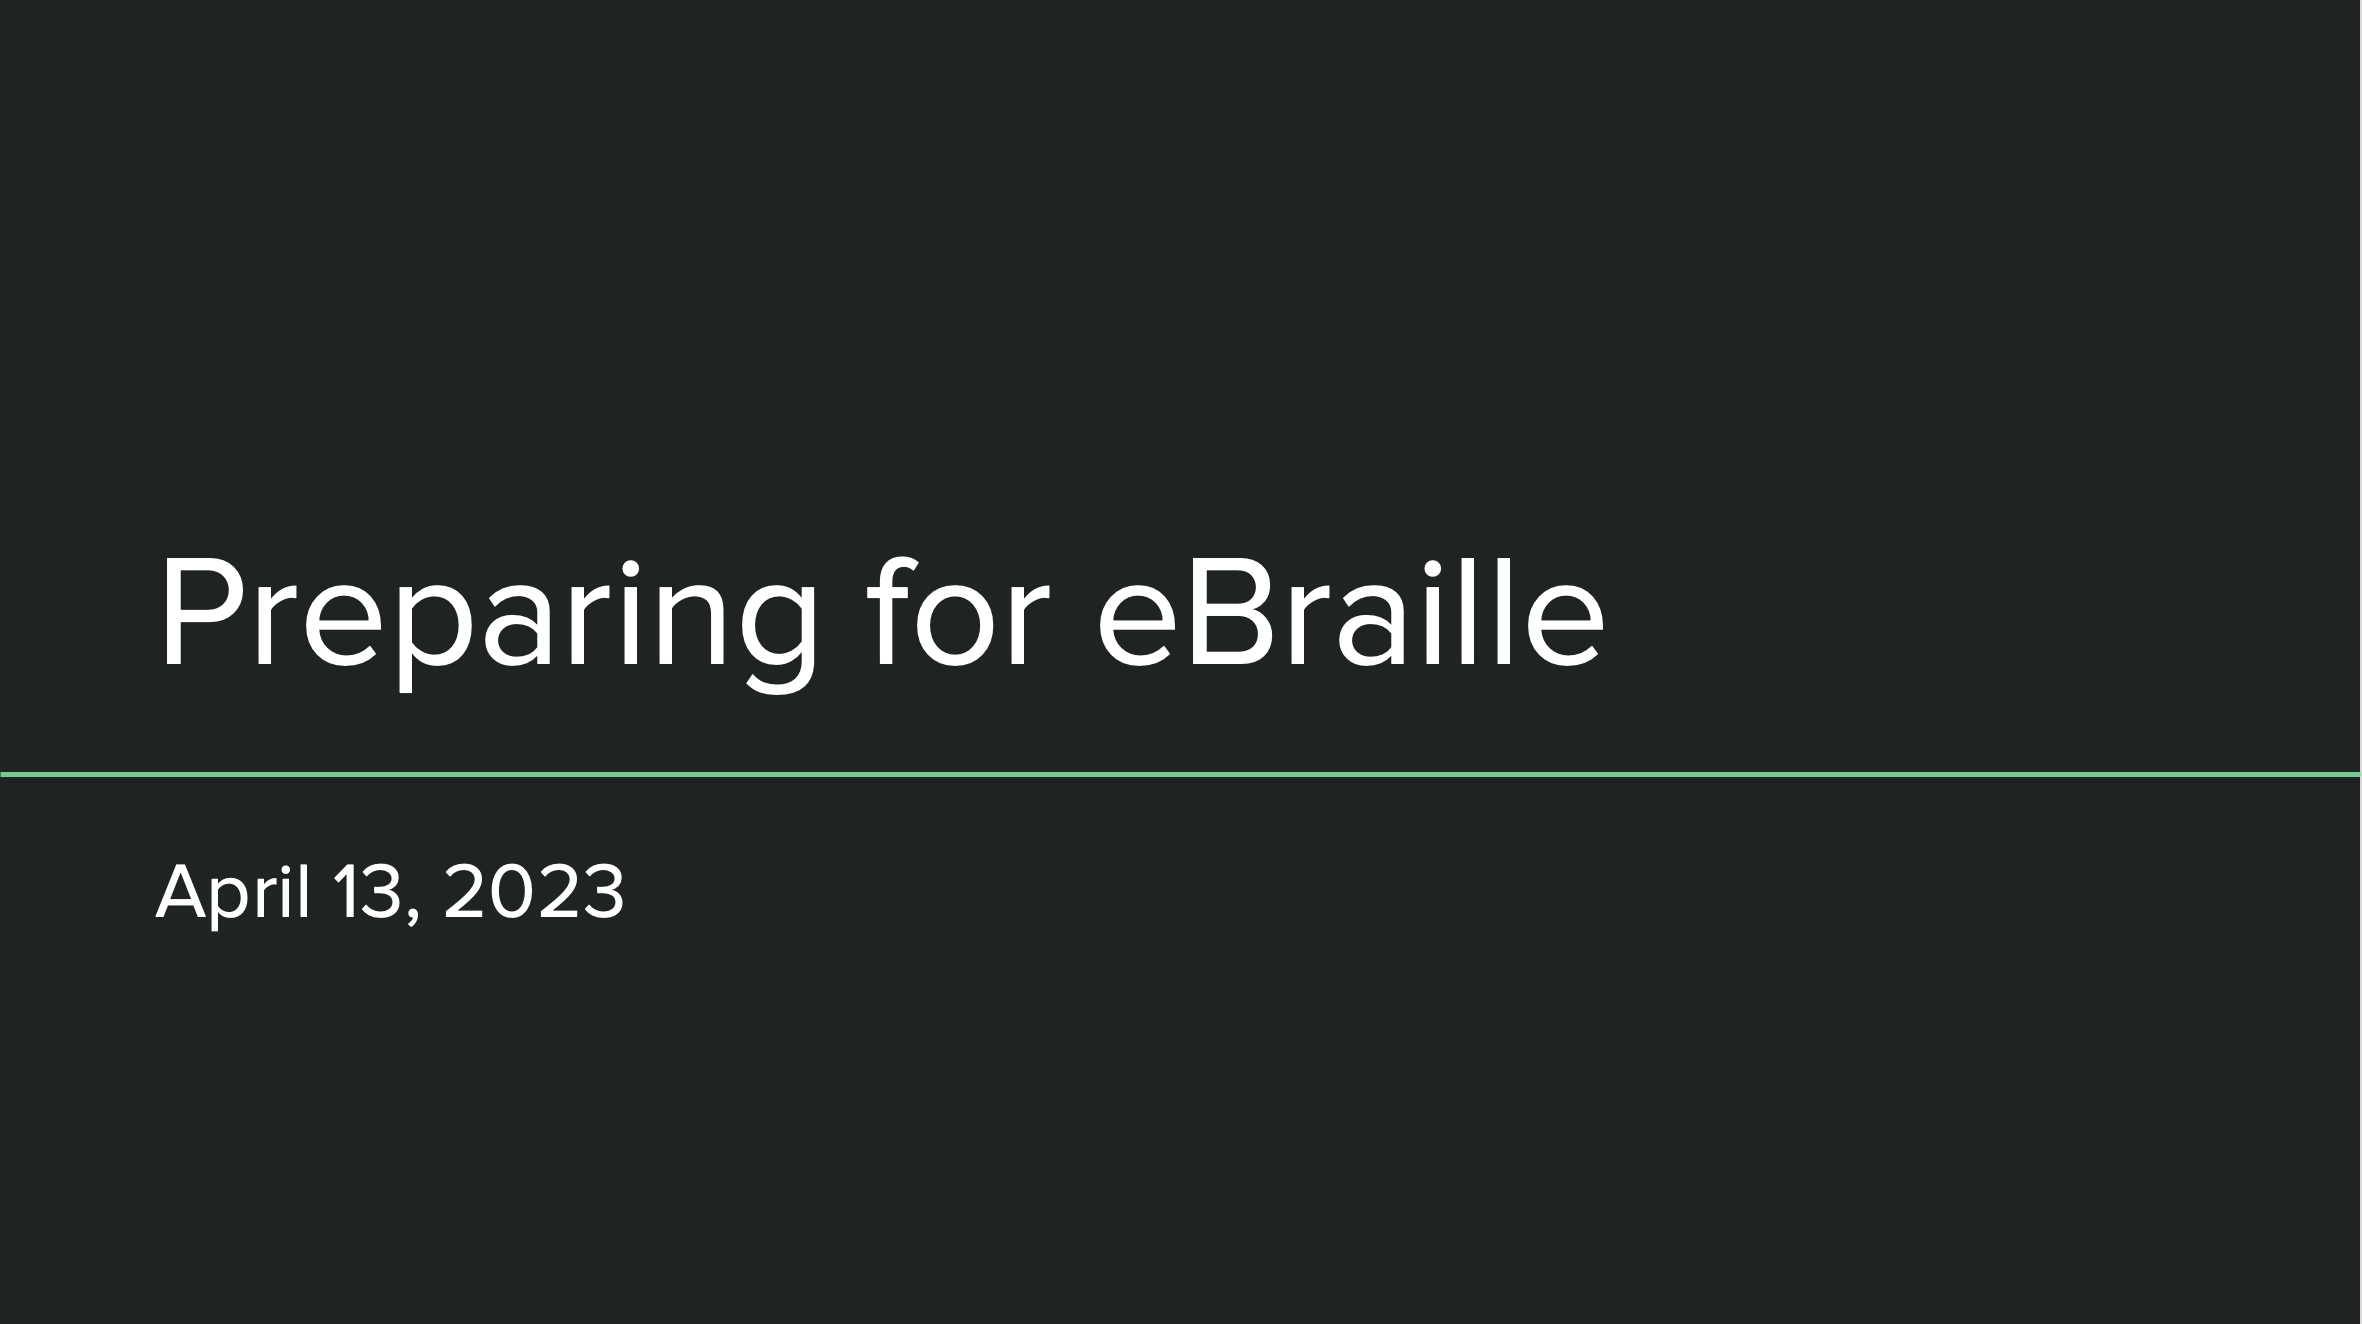 Title Slide of the Preparing for eBraille Webinar PowerPoint